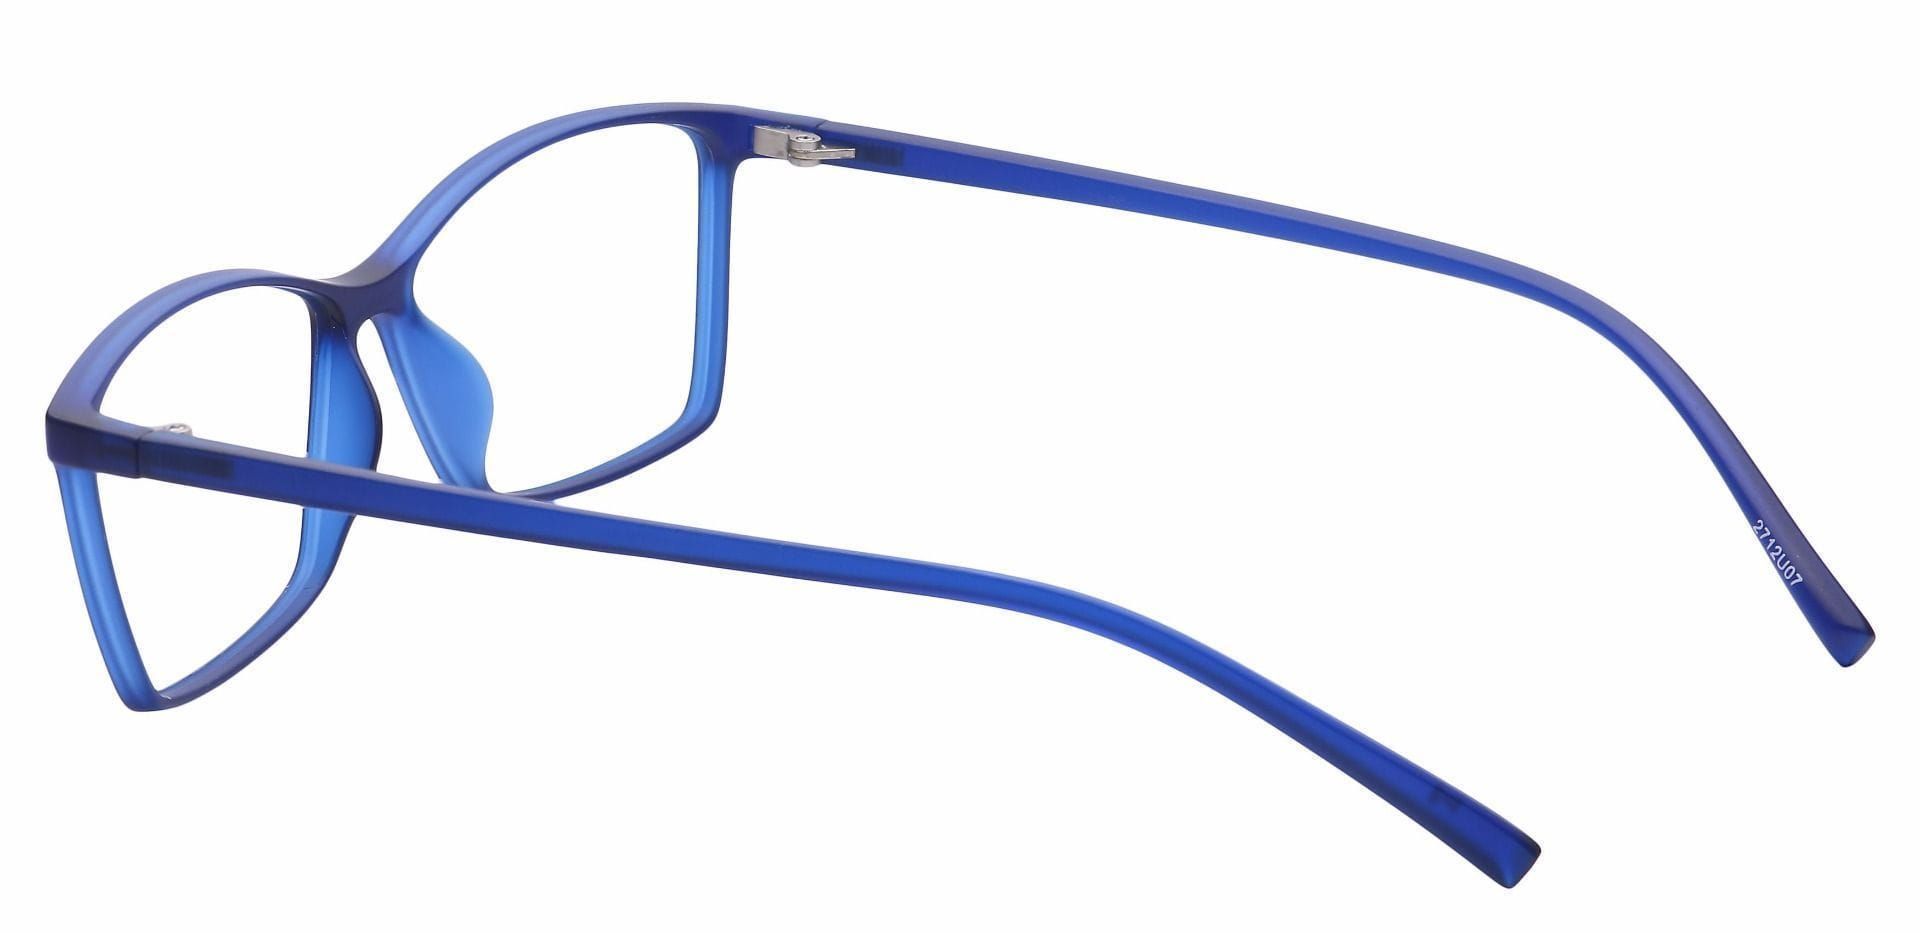 Align Rectangle Eyeglasses Frame - Blue